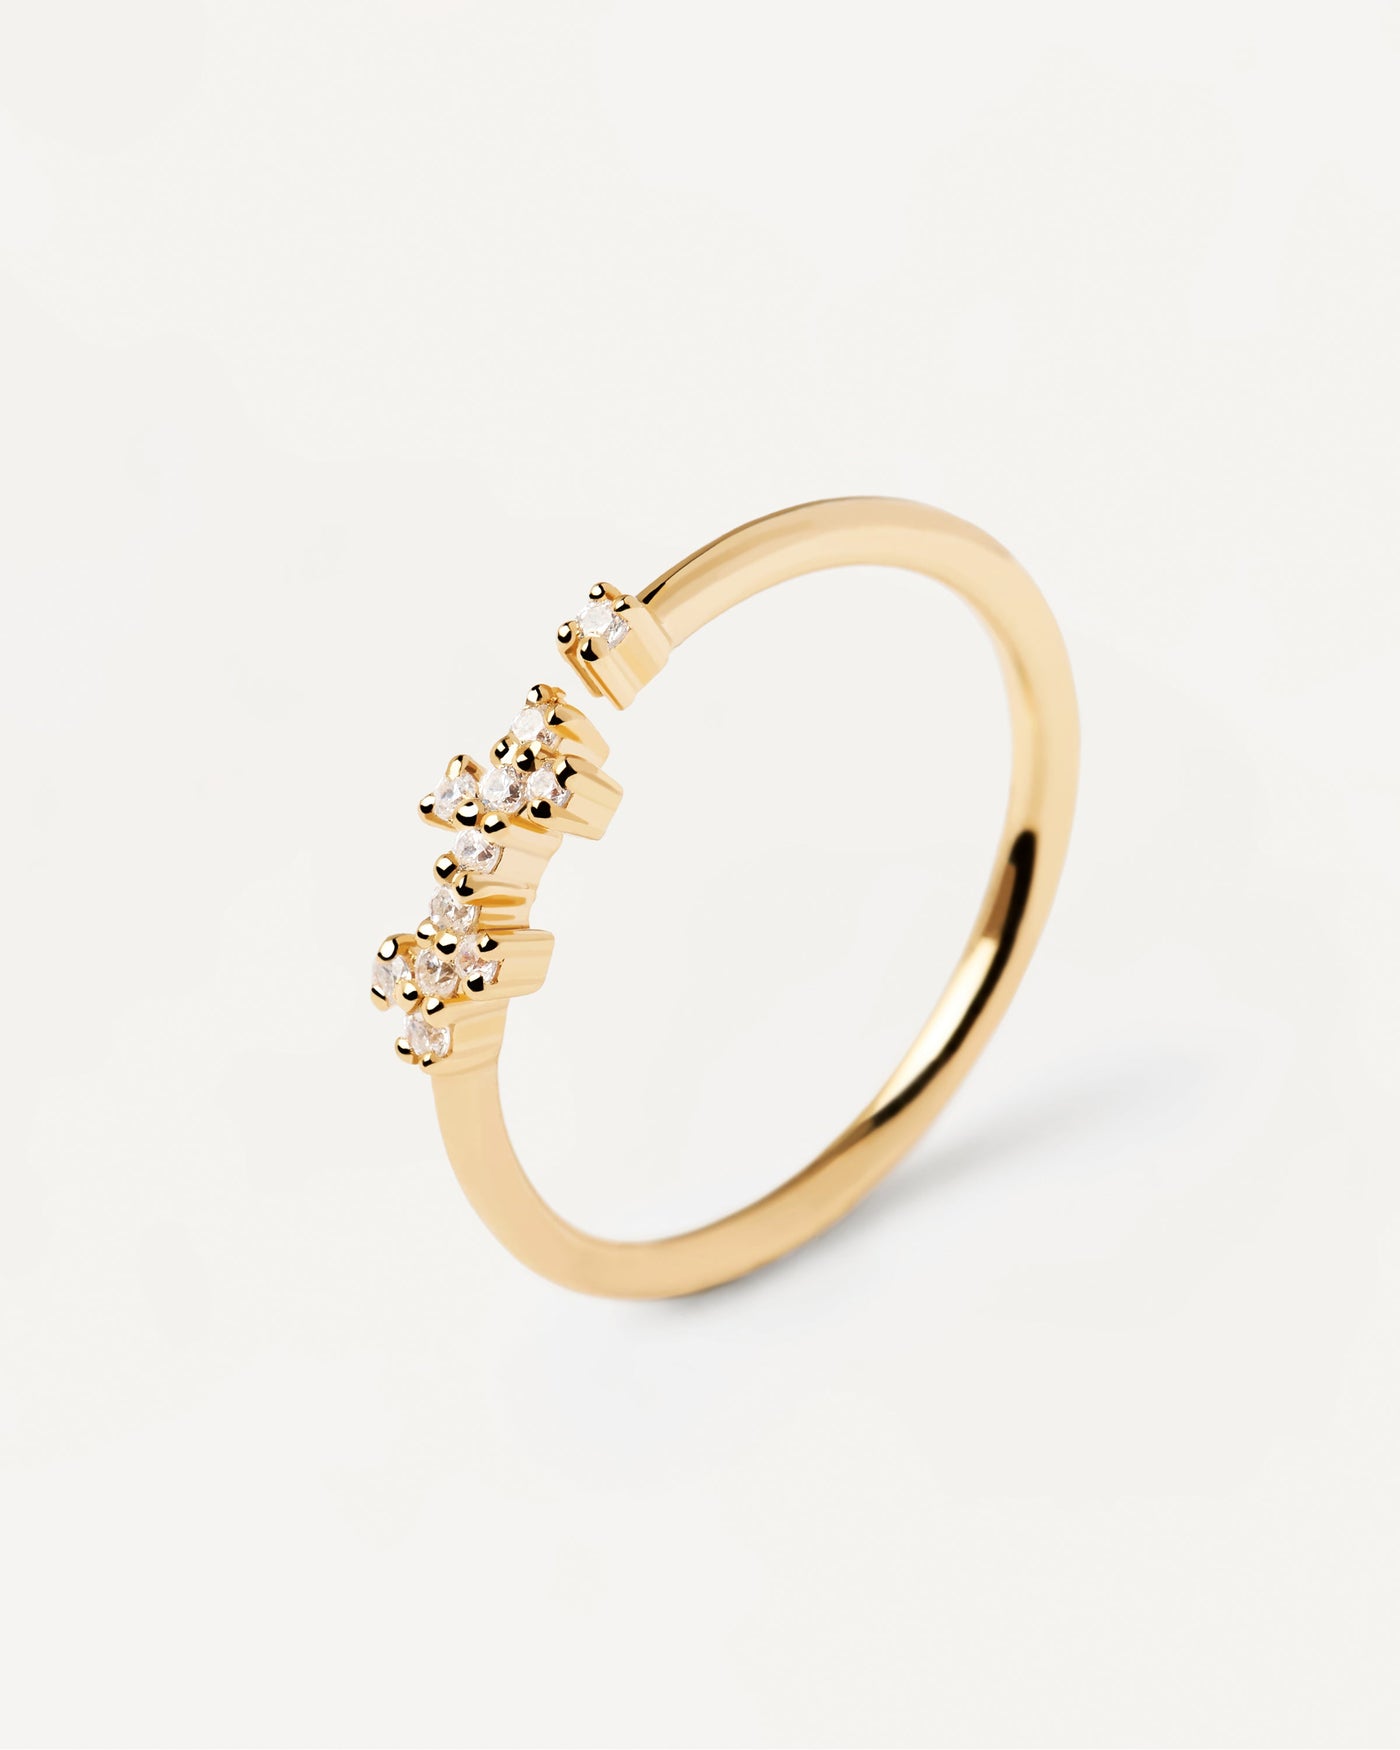 Anillo Prince. Delicado anillo de plata bañado en oro con circonitas blancas. Consigue las últimas novedades de PDPAOLA. Haz tu pedido de forma segura y obtén este Best Seller.